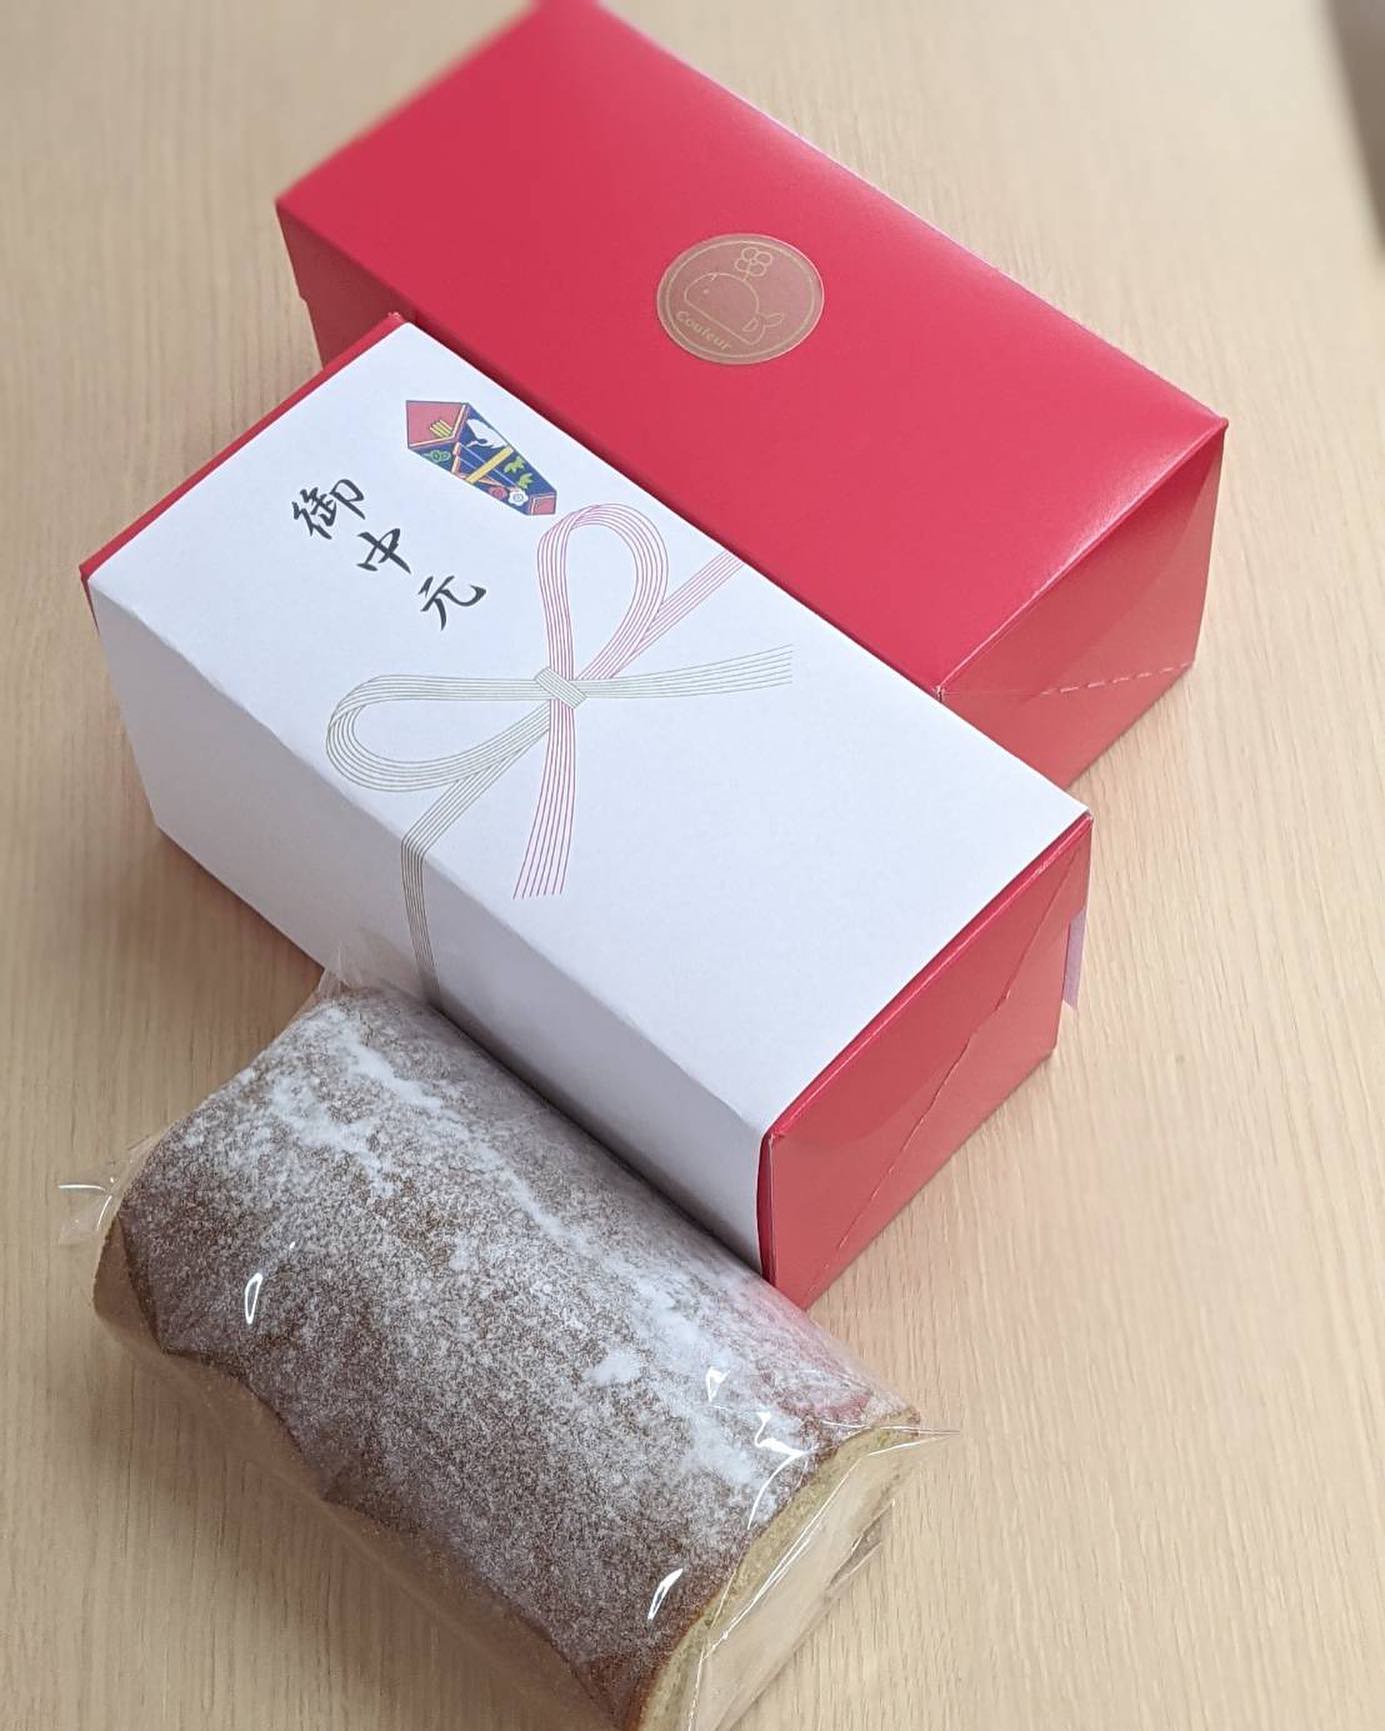 ．．きび糖のみを使用したクリームたっぷり❣️やさしい甘さの#きび糖ロールケーキいつもありがとうございます御中元、その他の熨斗も対応可能ですので、お気軽にお声掛けください️#couleur #クルール#きび糖　#きび糖ロールケーキ#沖縄 #okinawa#cake #sweets #ケーキ #スイーツ#デザート #coffee #コーヒー #珈琲#herbtea  #ハーブティー#ケーキ好きな人と繋がりたい #ハーブティー好きな人と繋がりたい